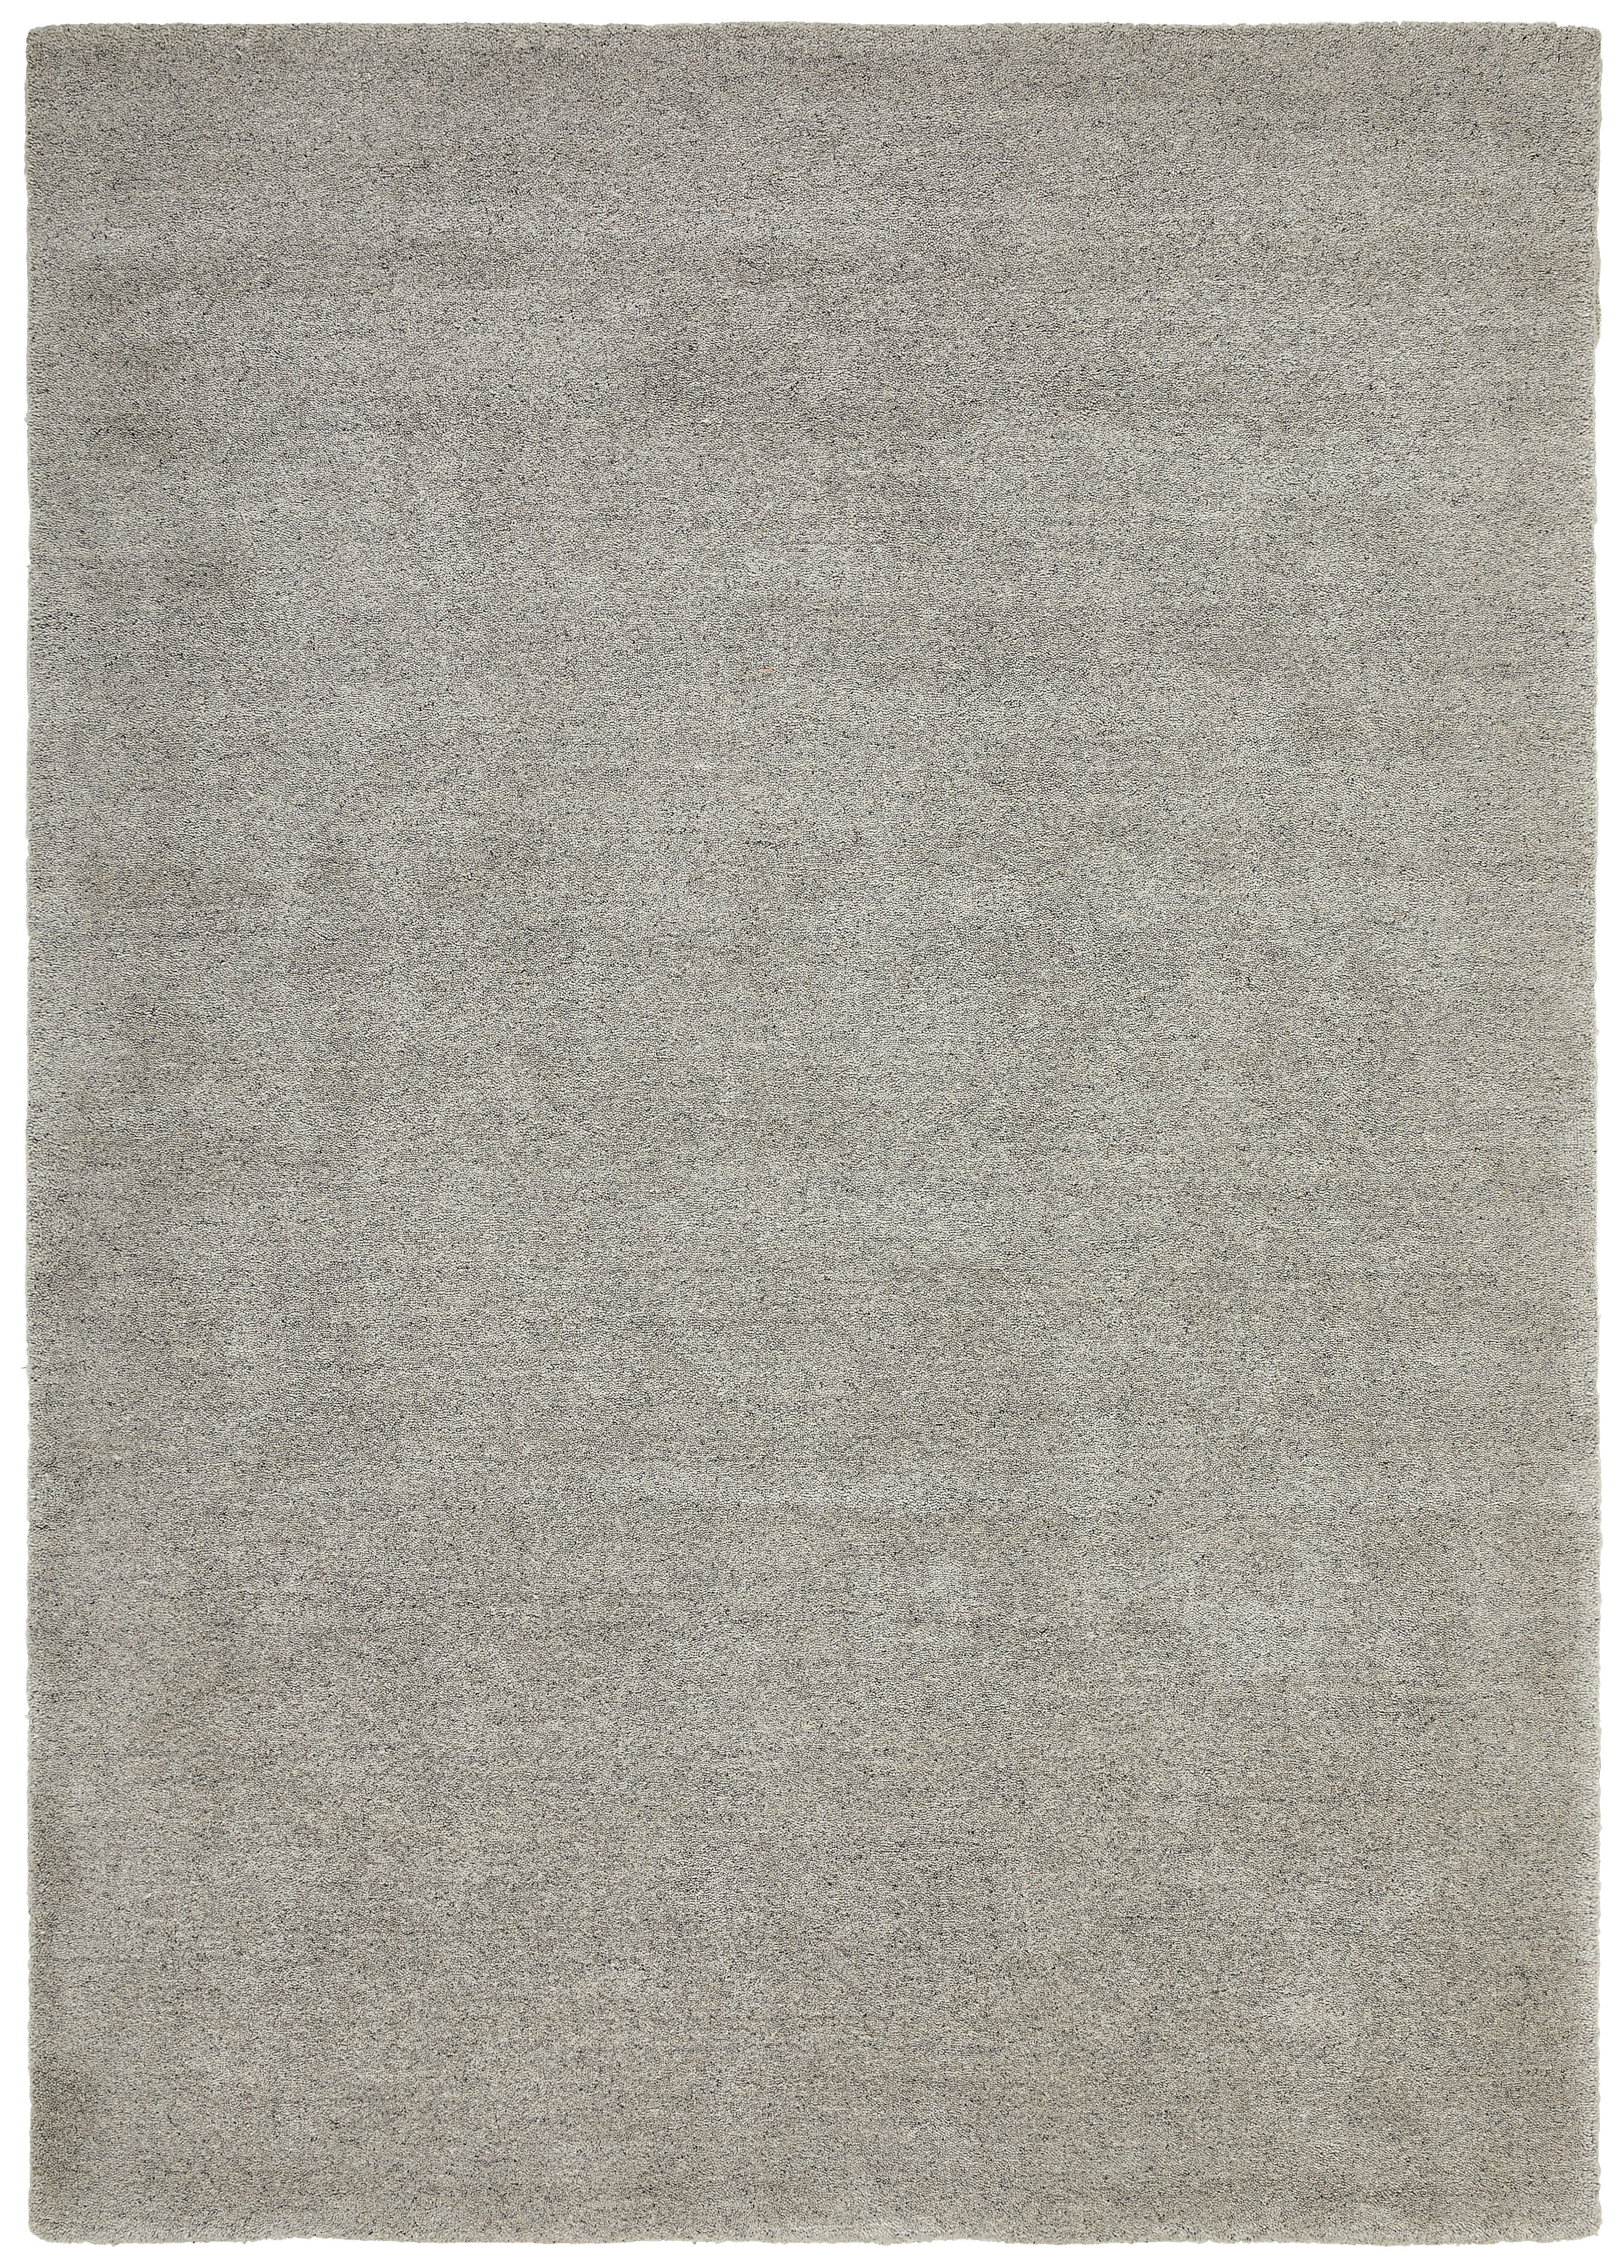 Wollteppich 70/140 cm  - Grau, Natur, Textil (70/140cm) - Linea Natura